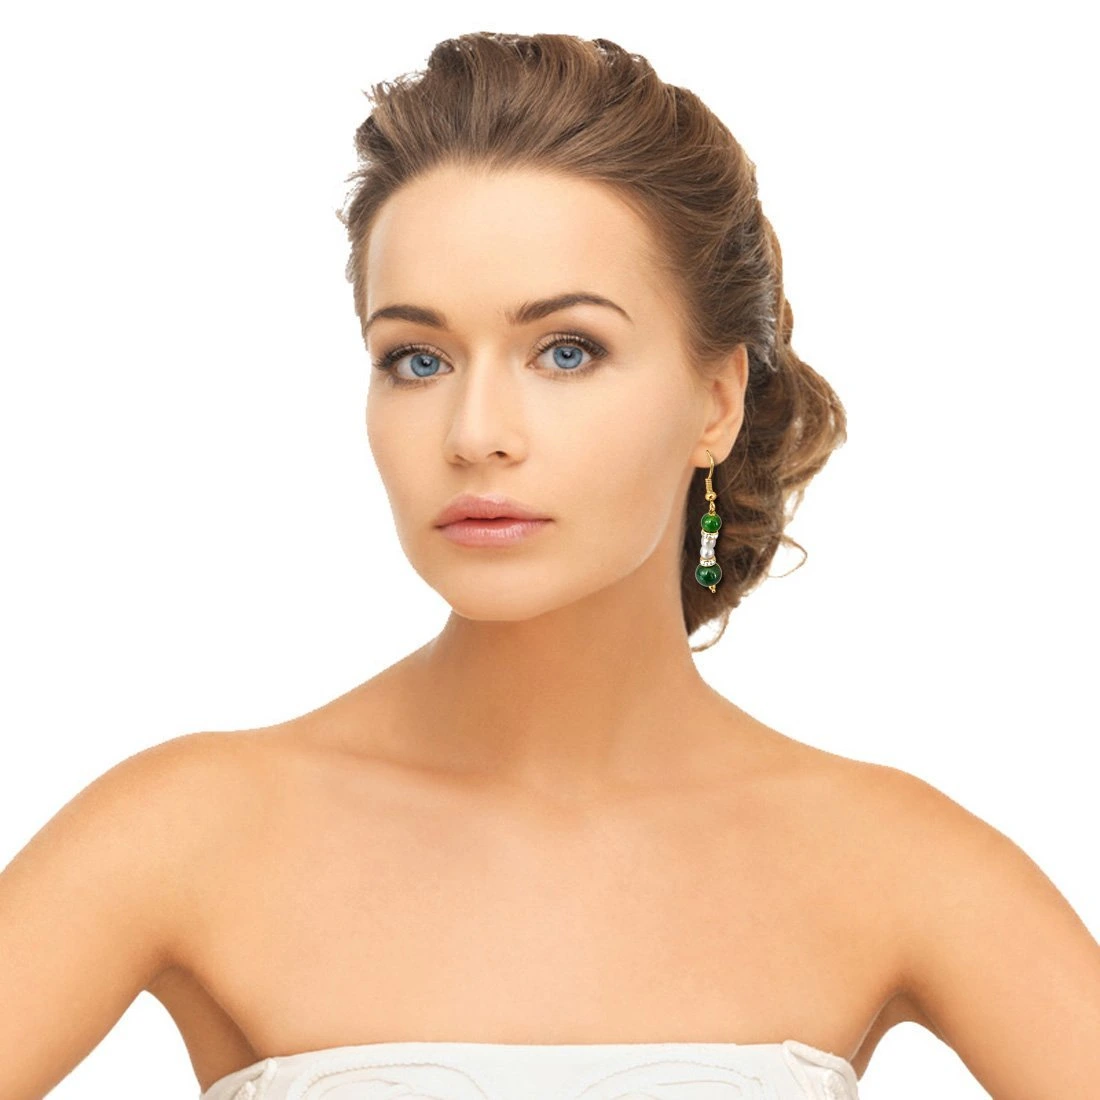 Real Pearl & Green Stone Earrings for Women (SE204)